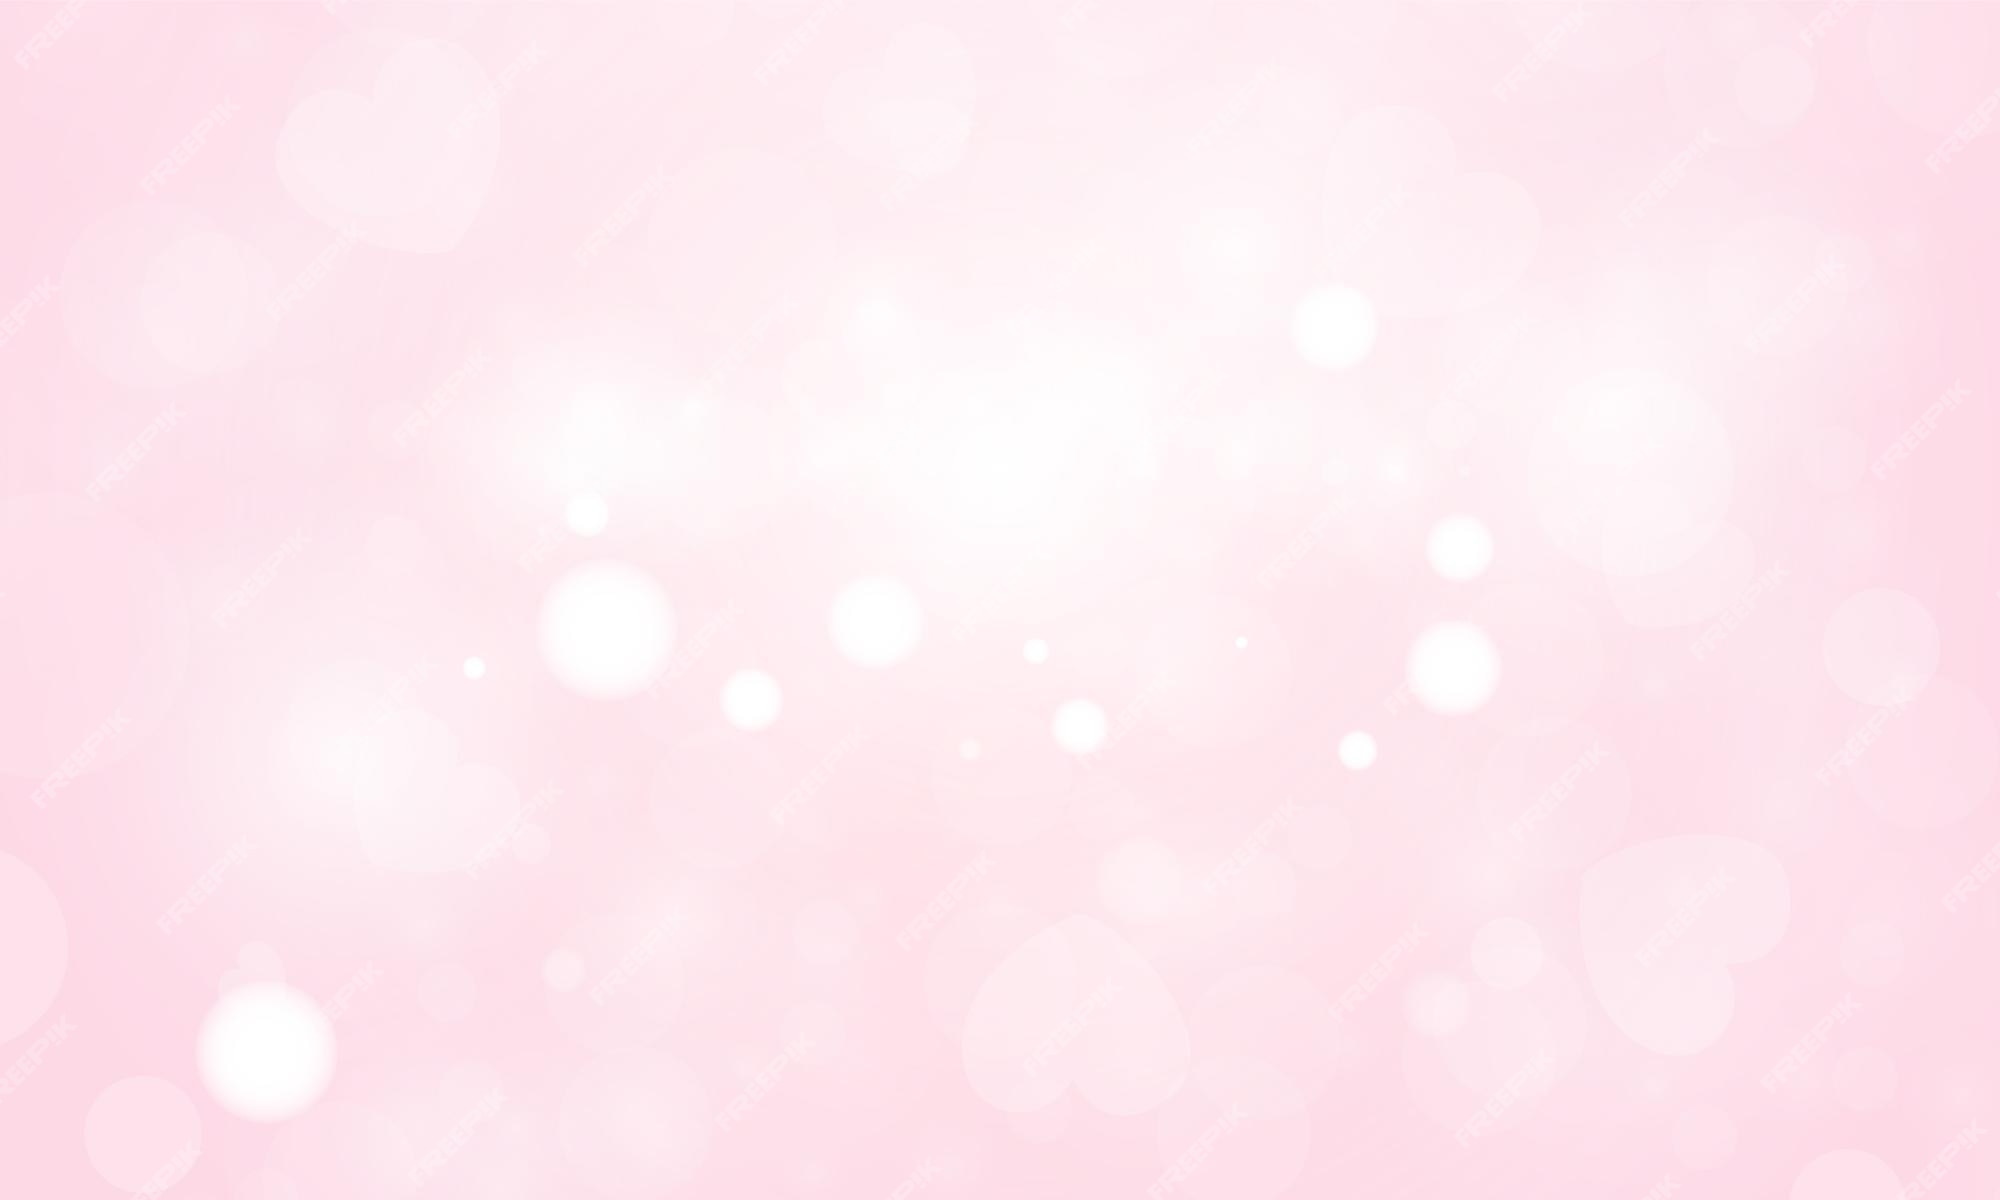 Ảnh nền hồng nhạt (light pink background images): Bạn muốn có một hình nền đơn giản, tinh tế và nhẹ nhàng để trang trí màn hình máy tính của mình? Ảnh nền hồng nhạt sẽ là sự lựa chọn hoàn hảo cho bạn. Với gam màu nhạt tinh tế và thiết kế đơn giản, nó sẽ tạo ra một không gian làm việc và học tập đầy tươi mới và thoải mái.